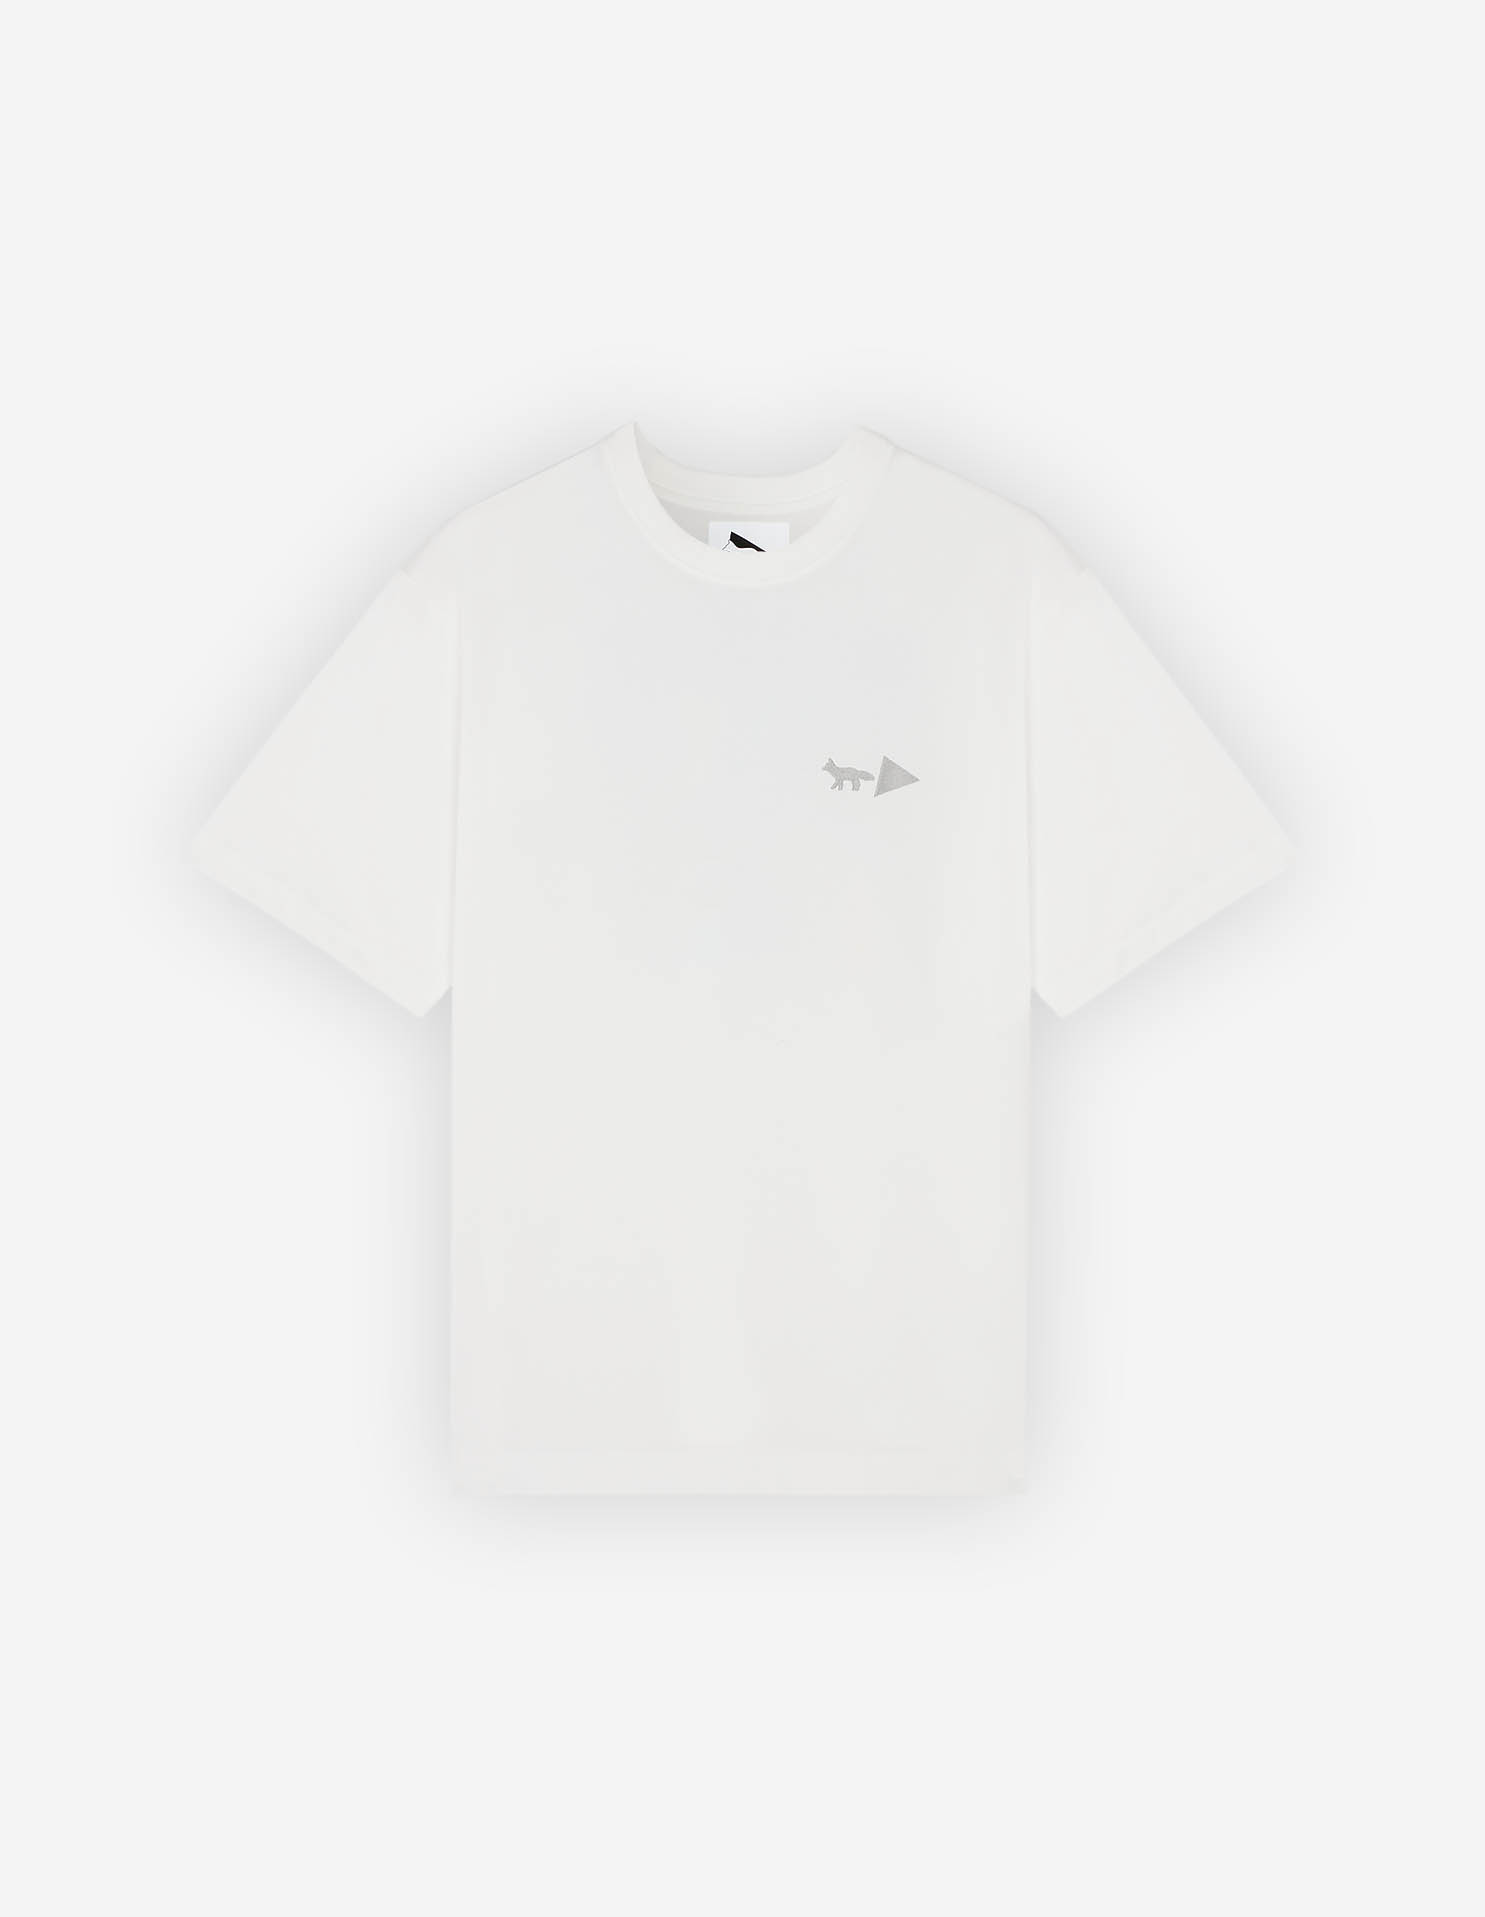 メゾン キツネ x AND WANDER ドライ コットン Tシャツ 1